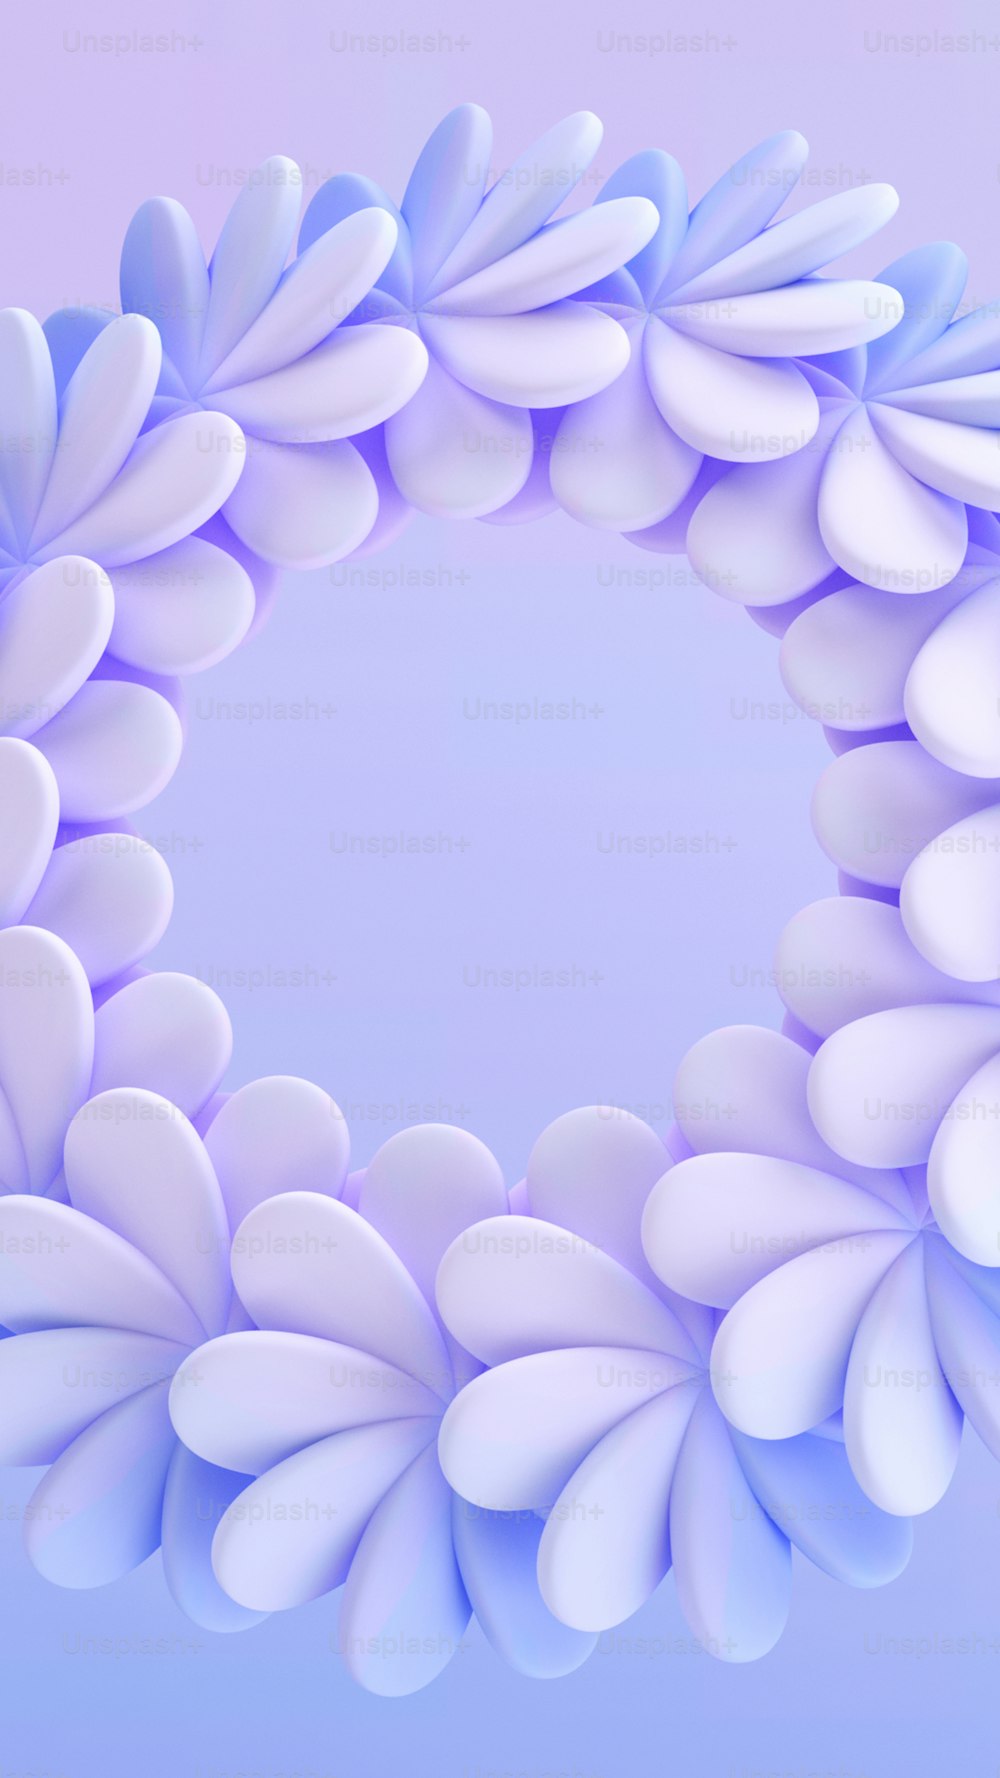 白い花びらを持つ青と白の円形のオブ�ジェクト